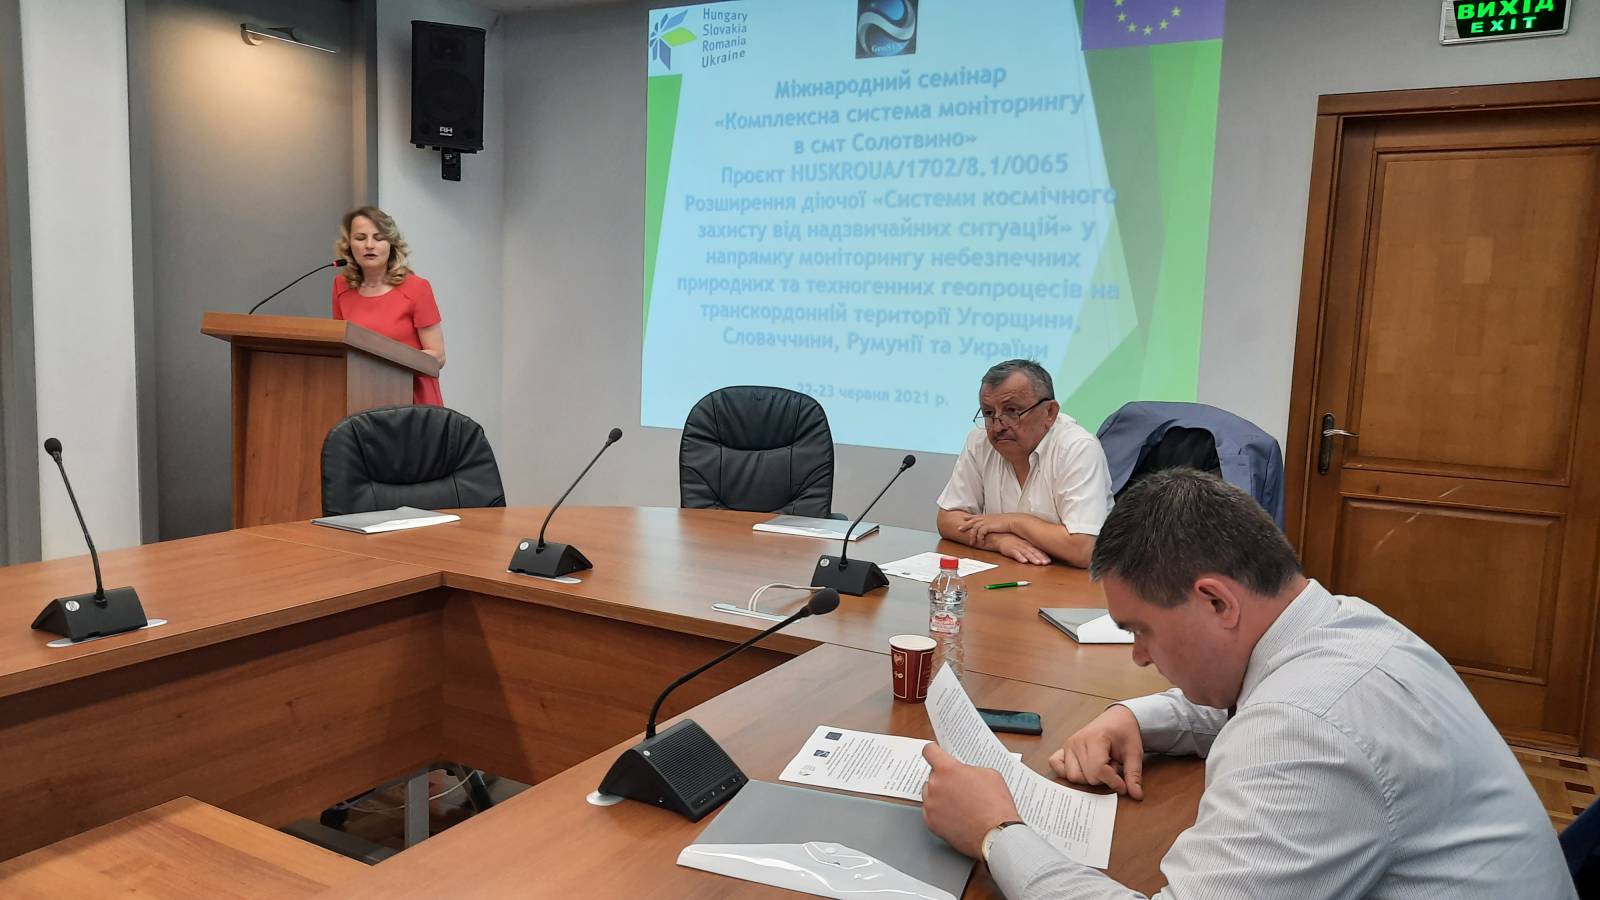 Щоб запобігти екологічній катастрофі, в УжНУ провели міжнародний семінар «Комплексна система моніторингу в смт Солотвино»